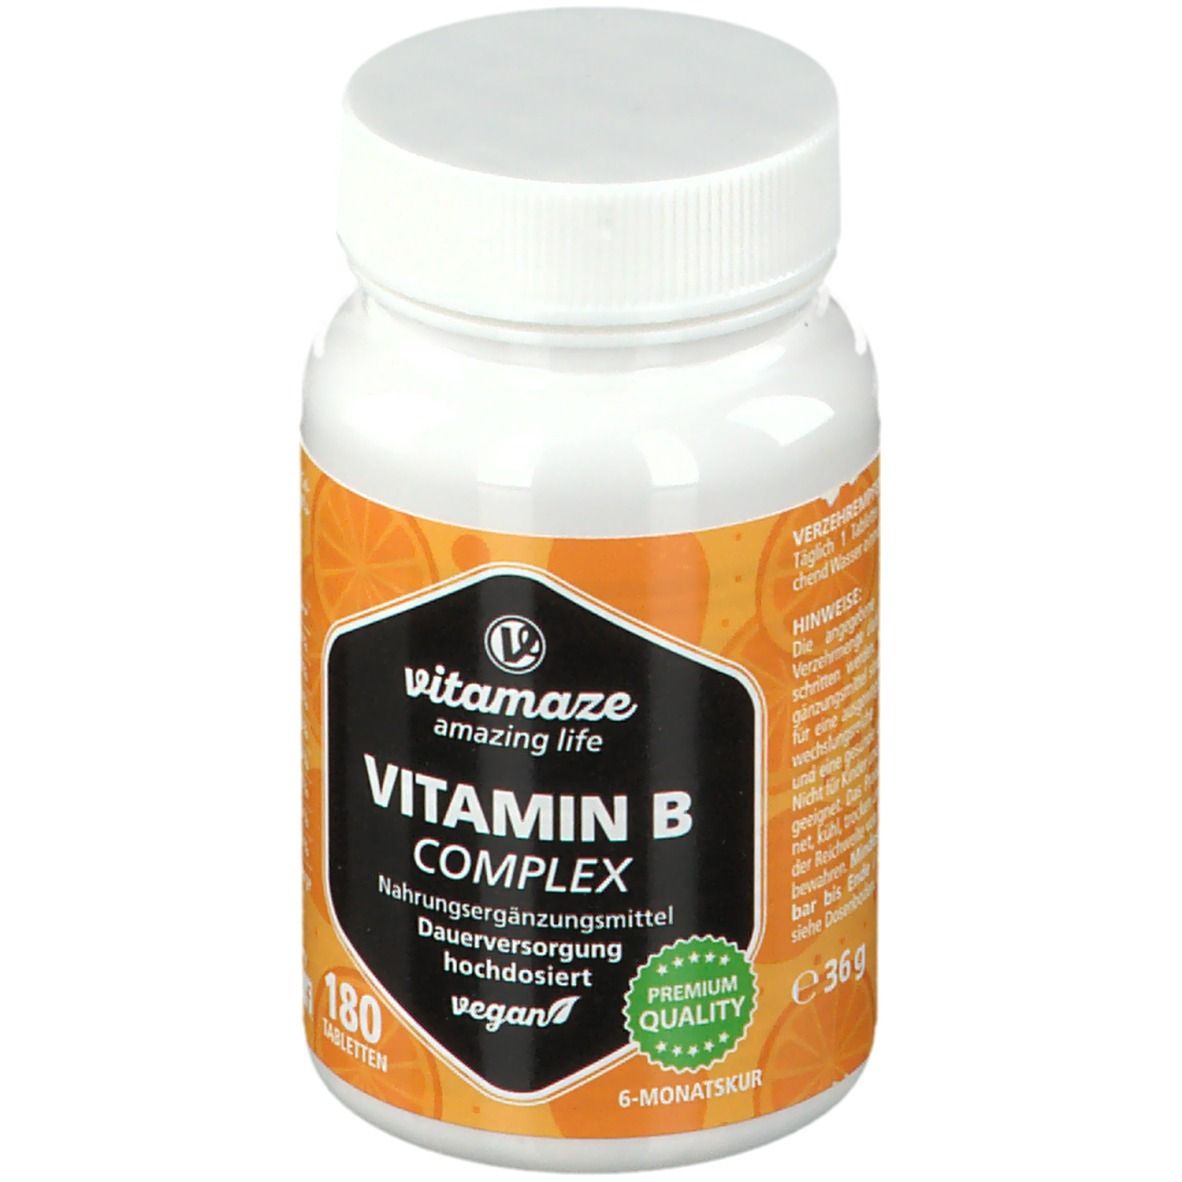 Vitamaze VITAMIN B-Complex hochdosiert vegan